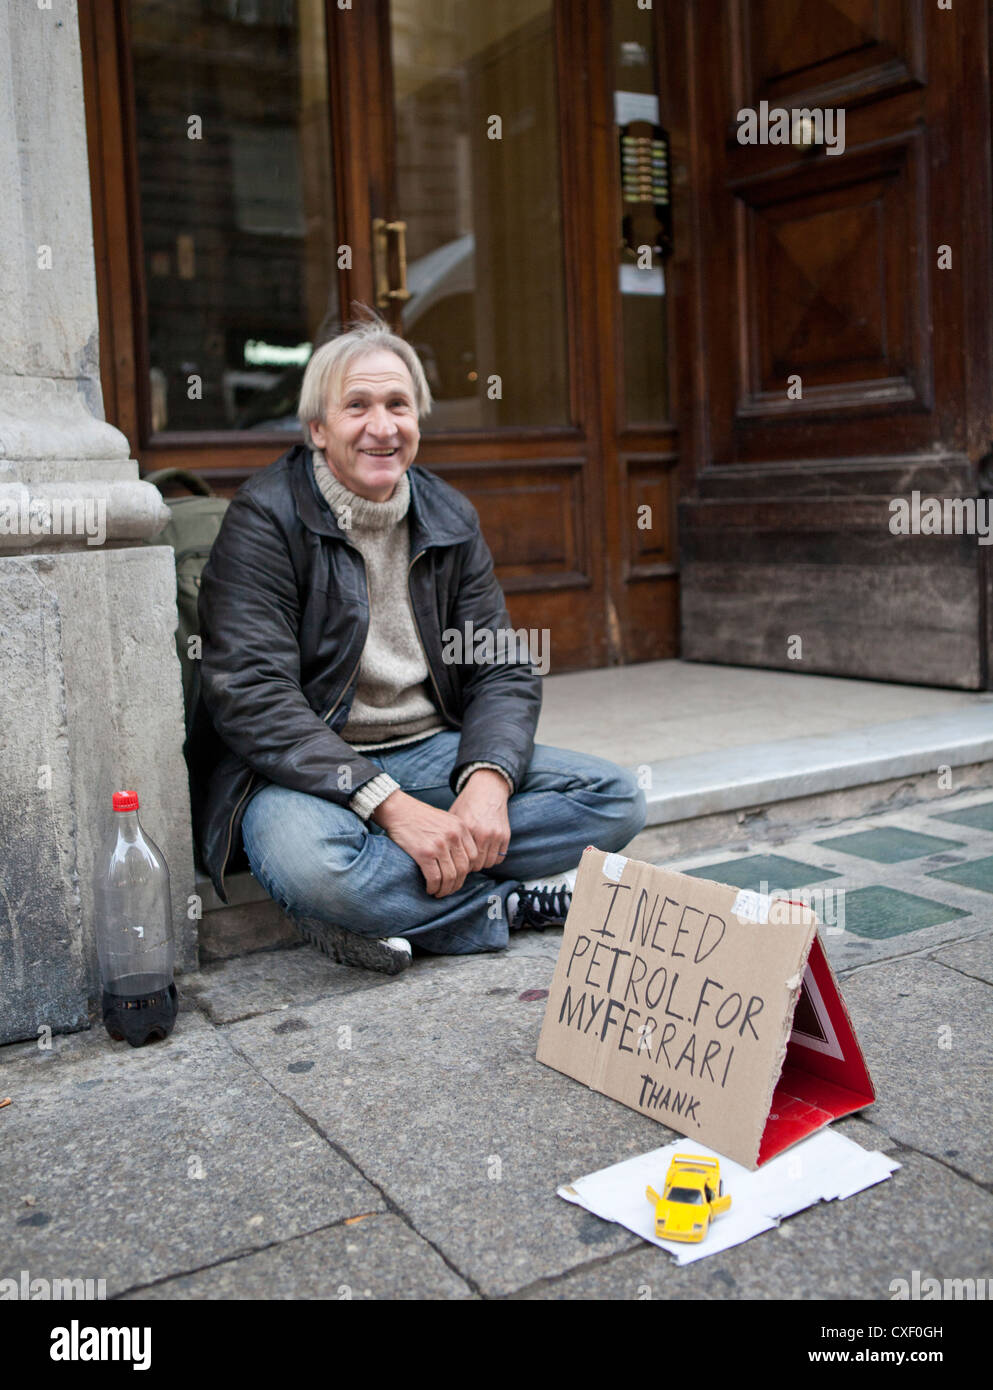 homeless man with car sign, Genova, Italy Stock Photo